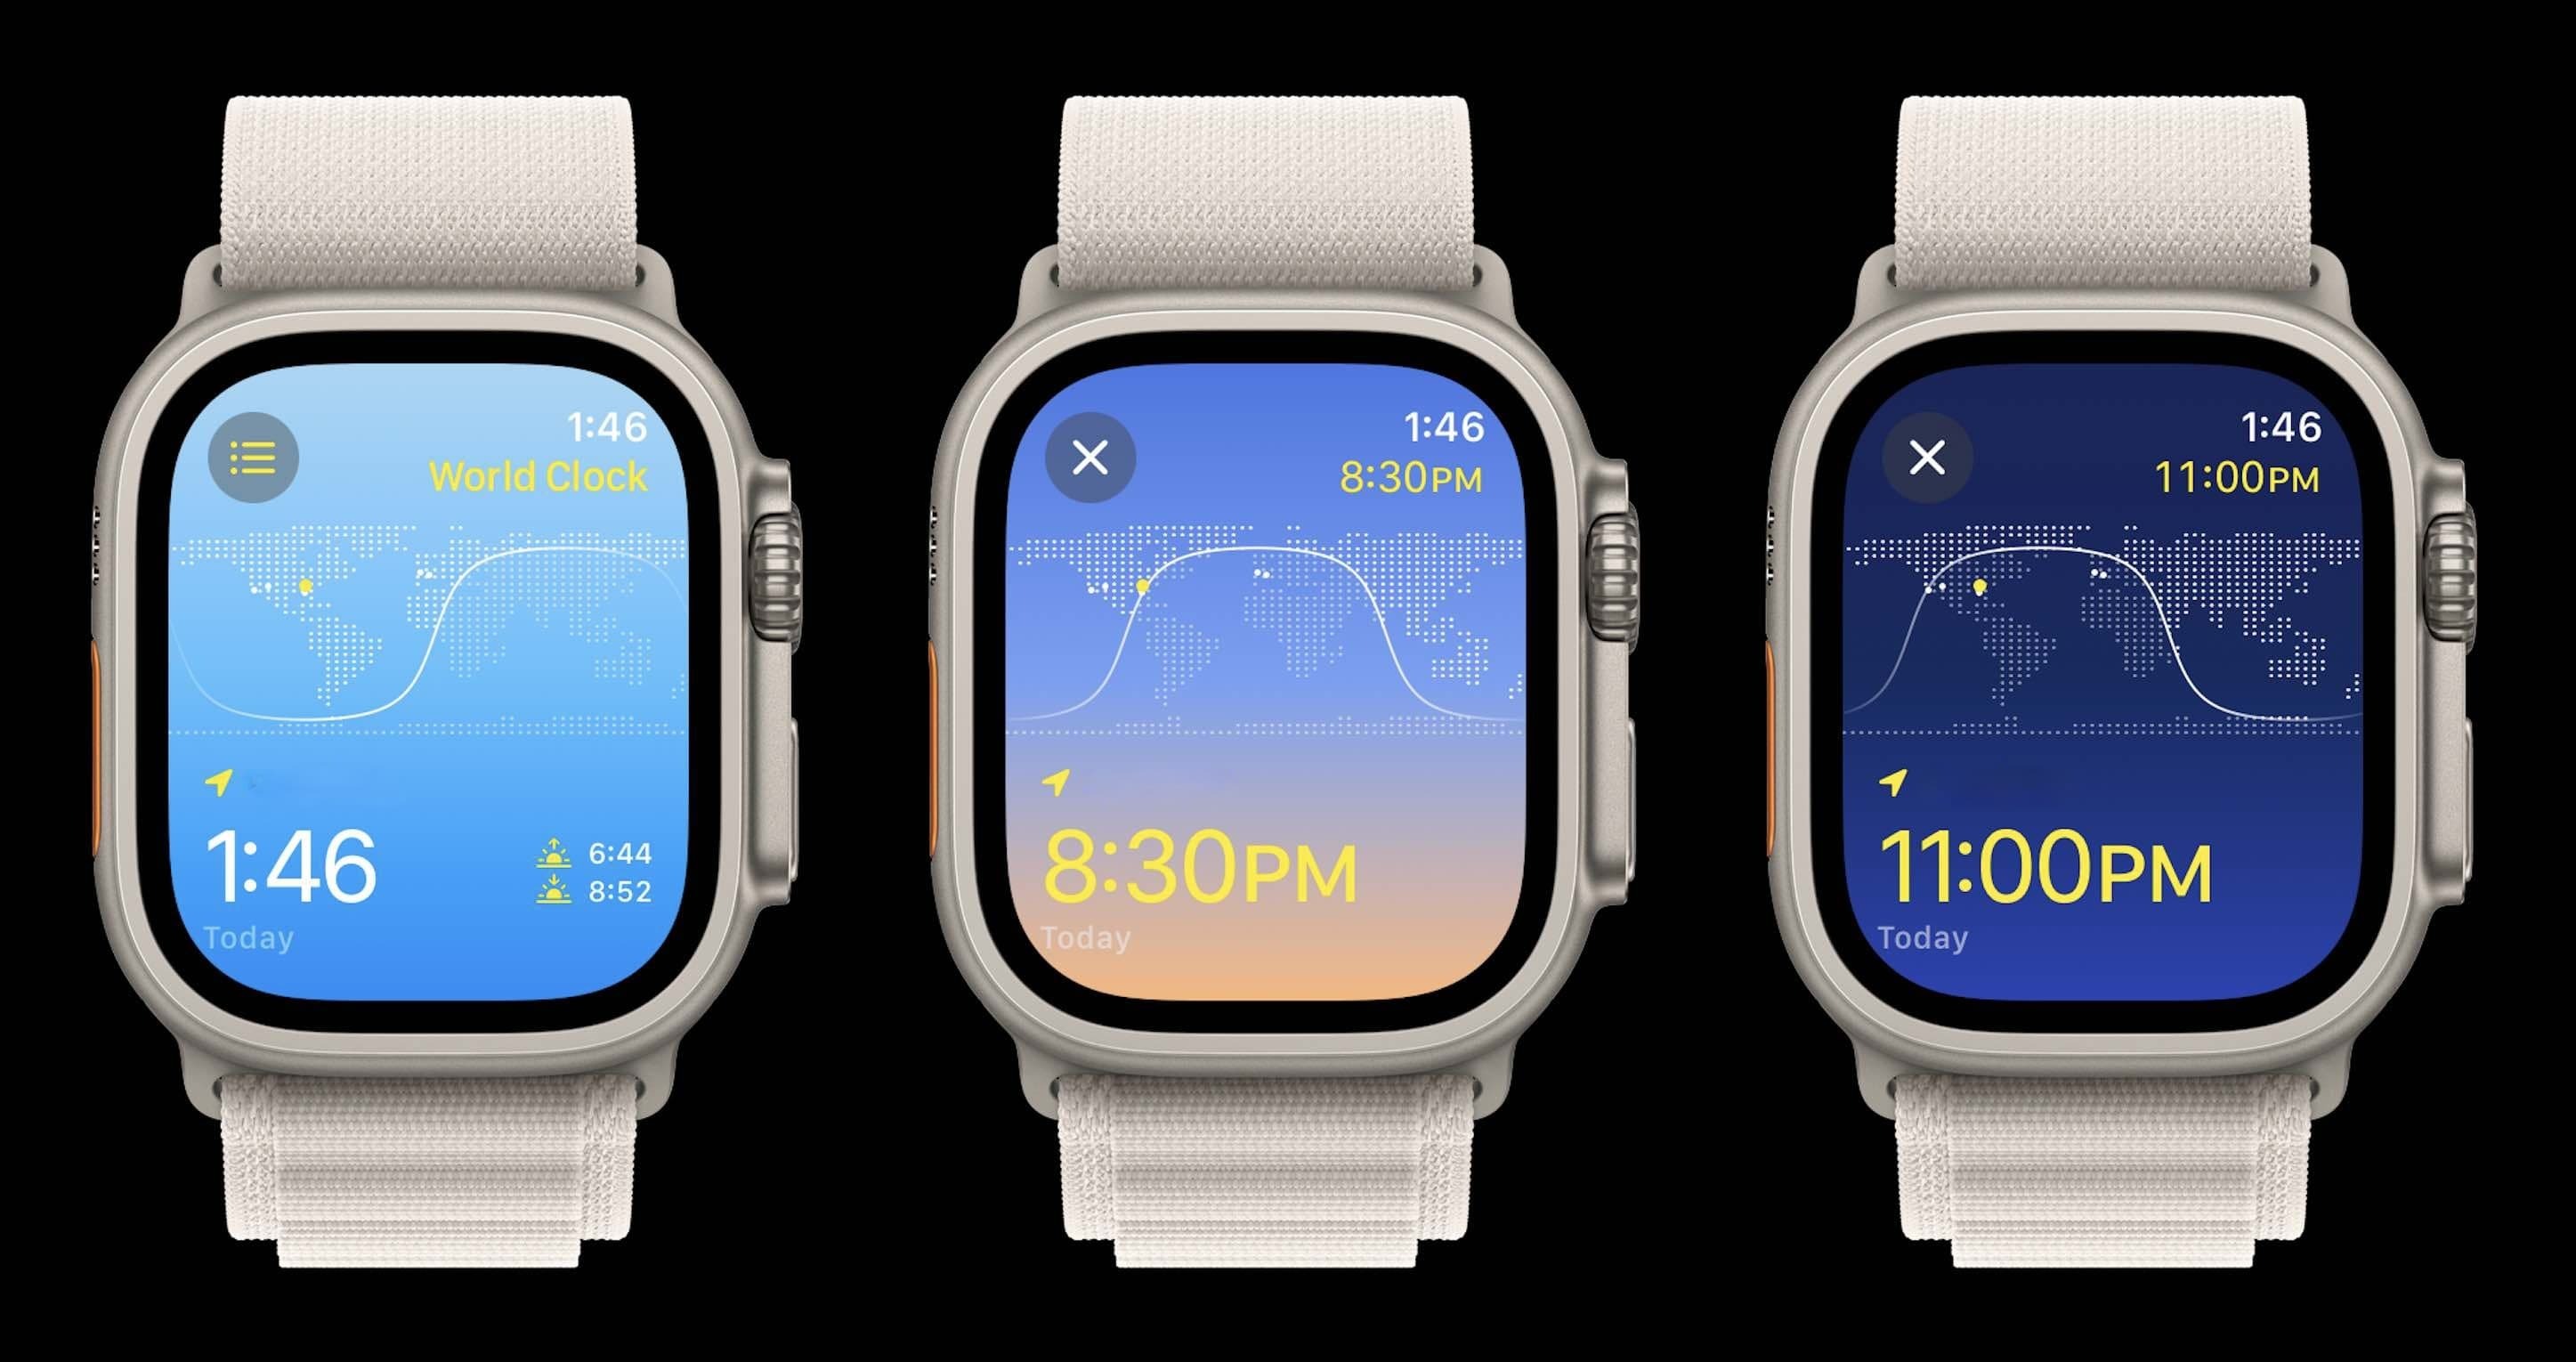 Приложения для часов Apple получат обновление дизайна